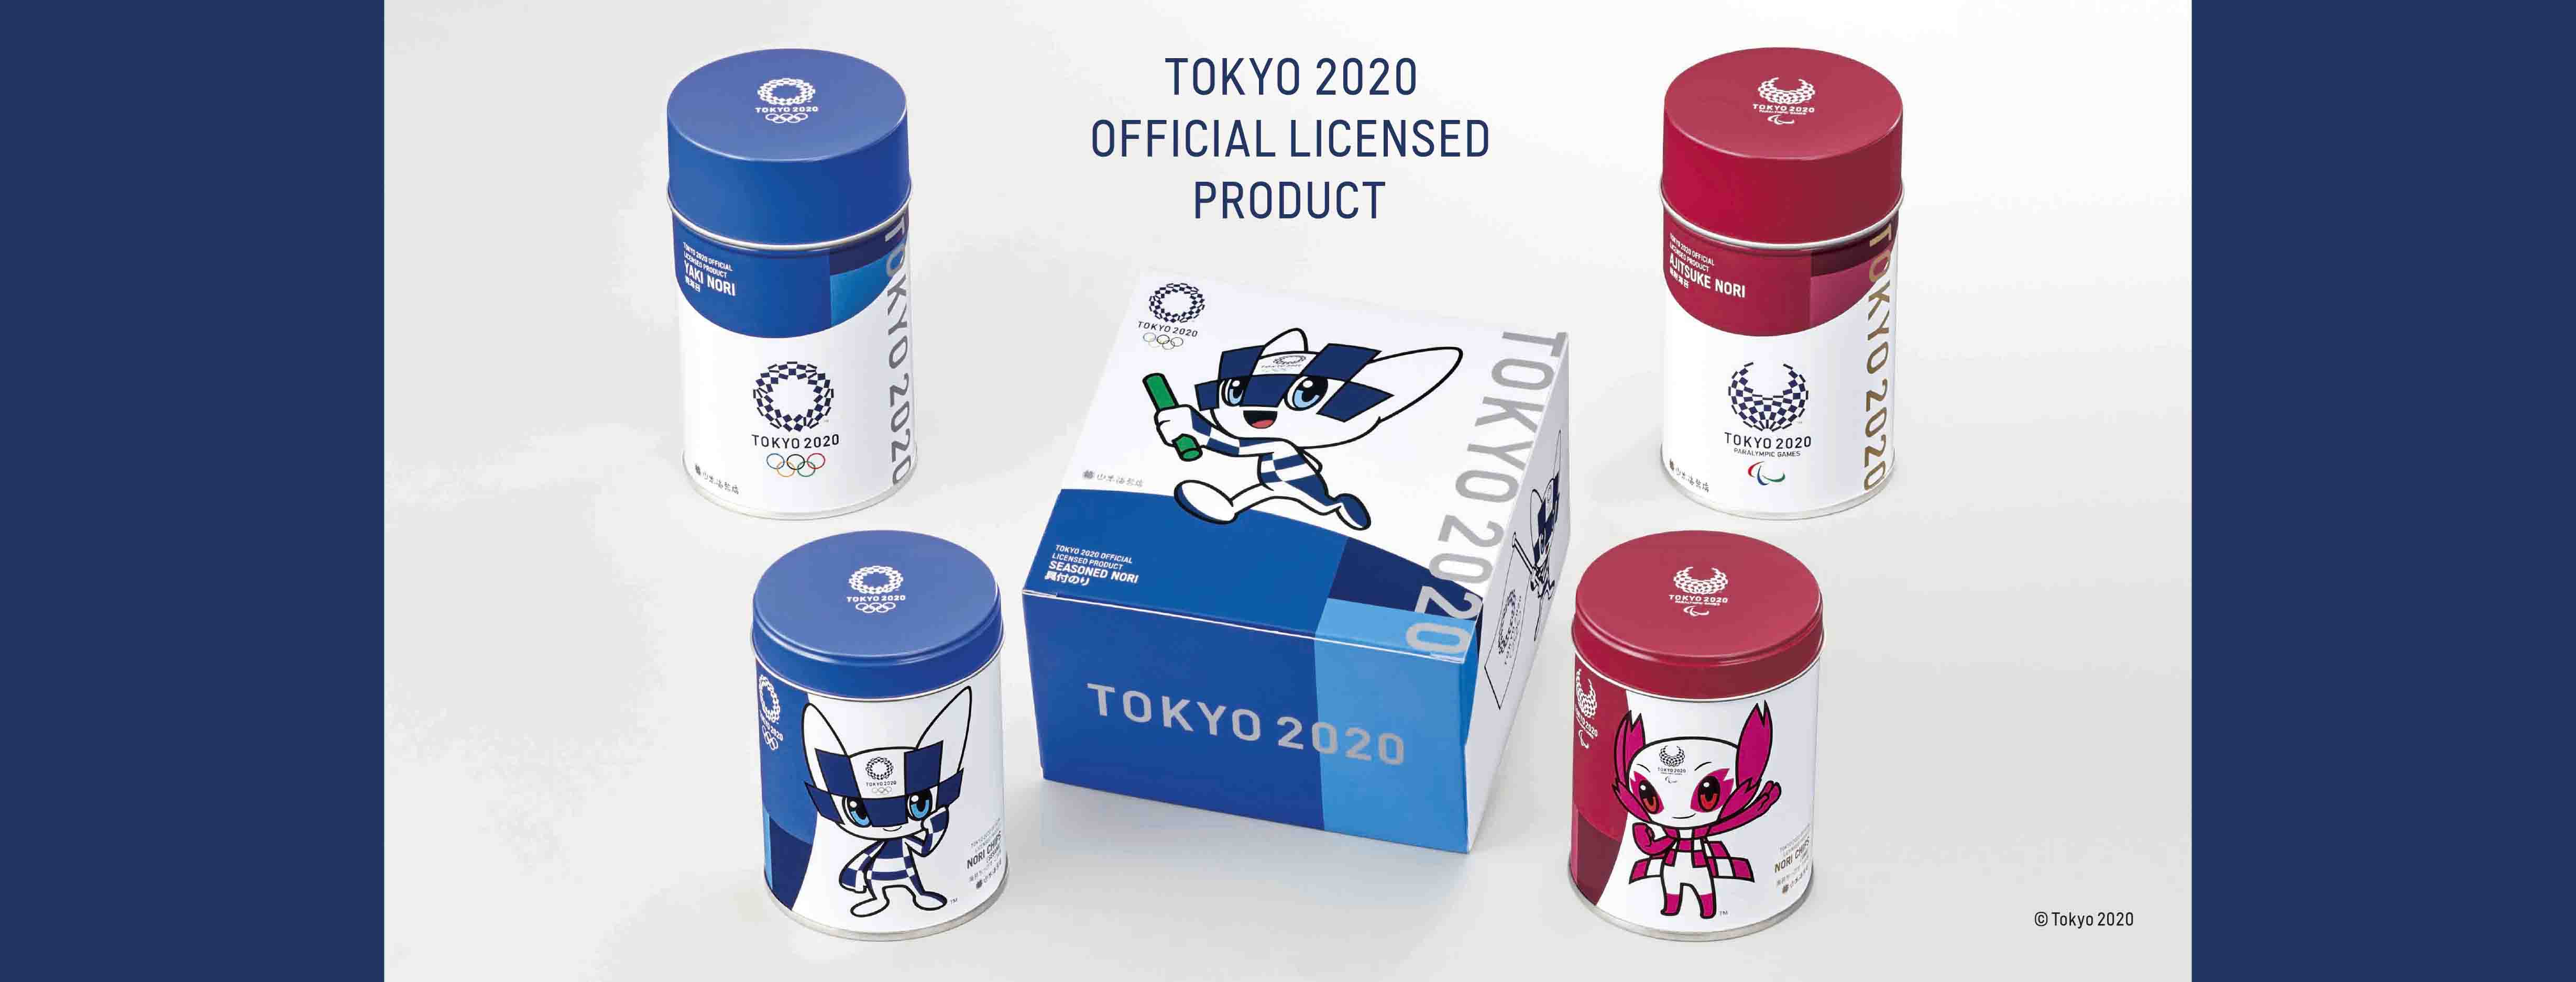 東京2020公式ラインセンス商品